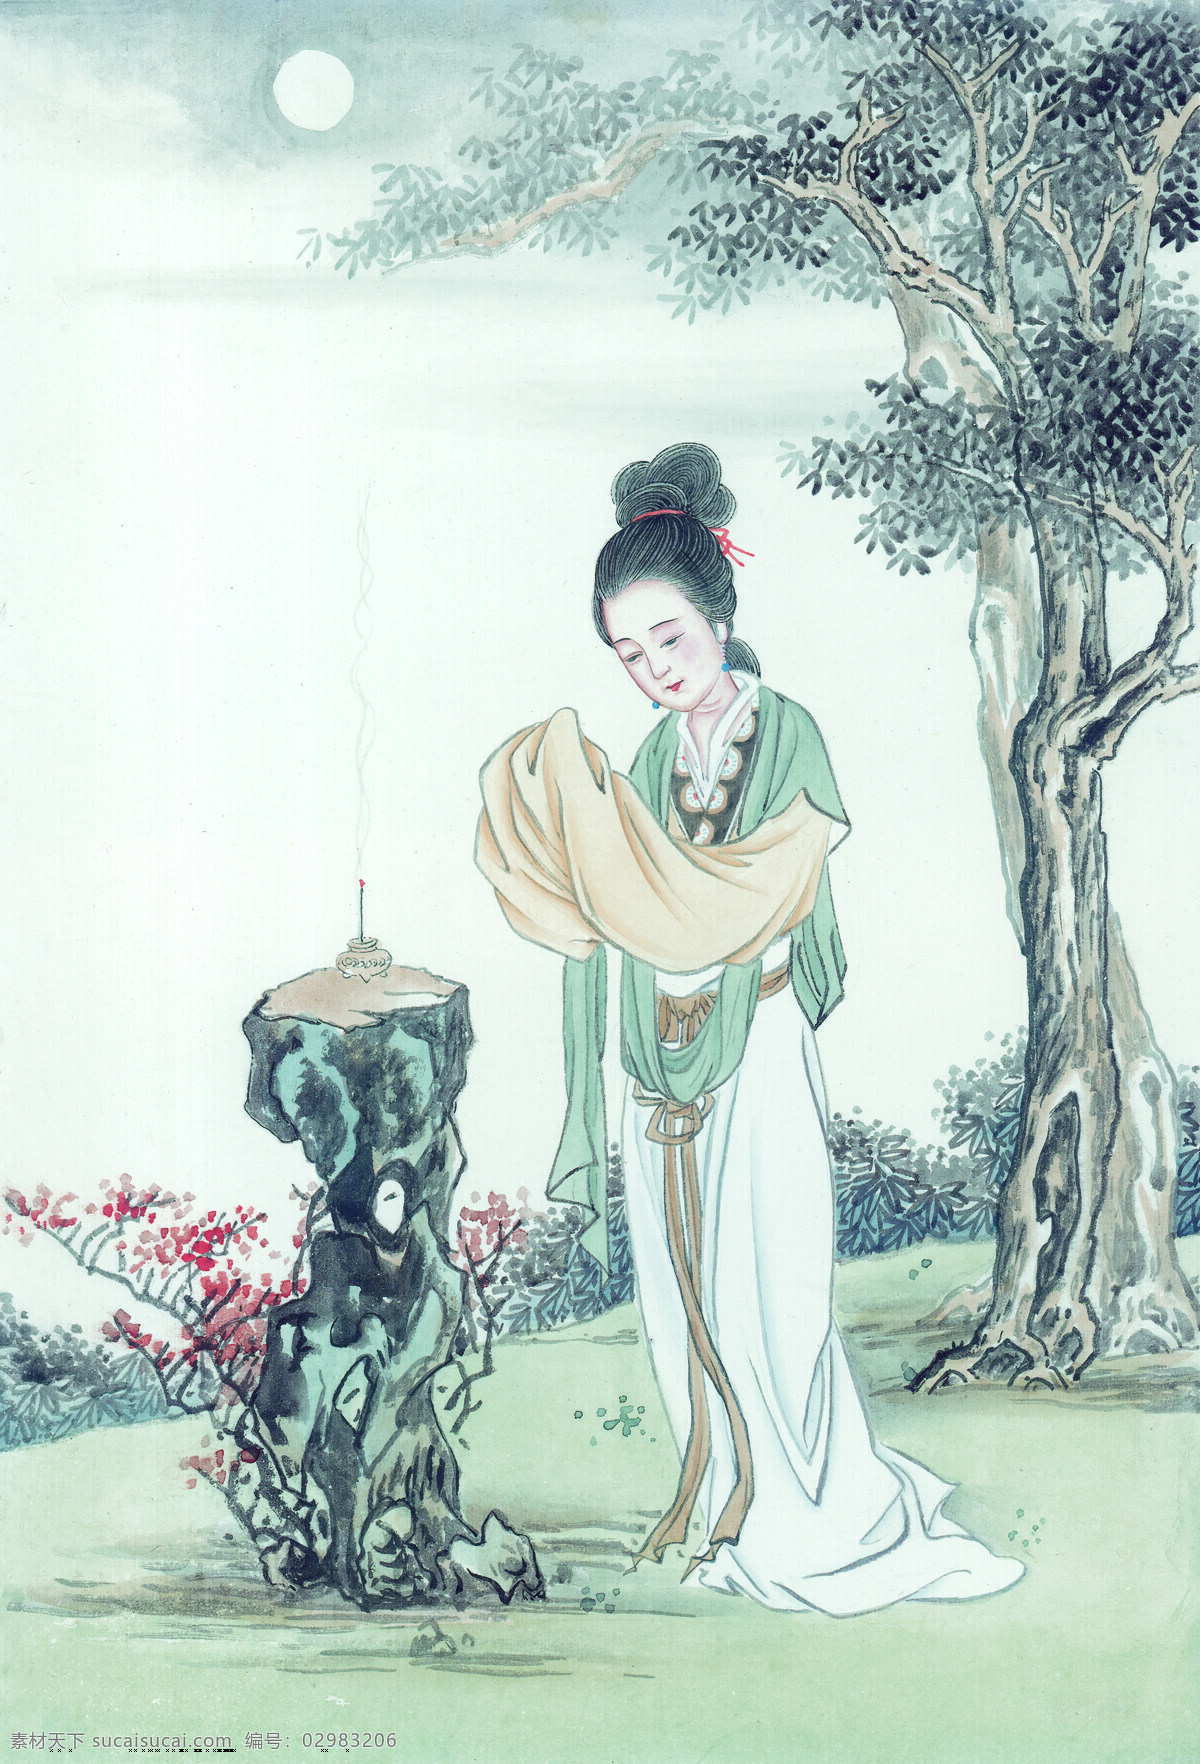 中华 艺术 绘画 古画 仙女 神仙 嫦娥 貂蝉 西施 中国 古代 传统绘画艺术 美术绘画 名画欣赏 水彩画 水墨画 文化艺术